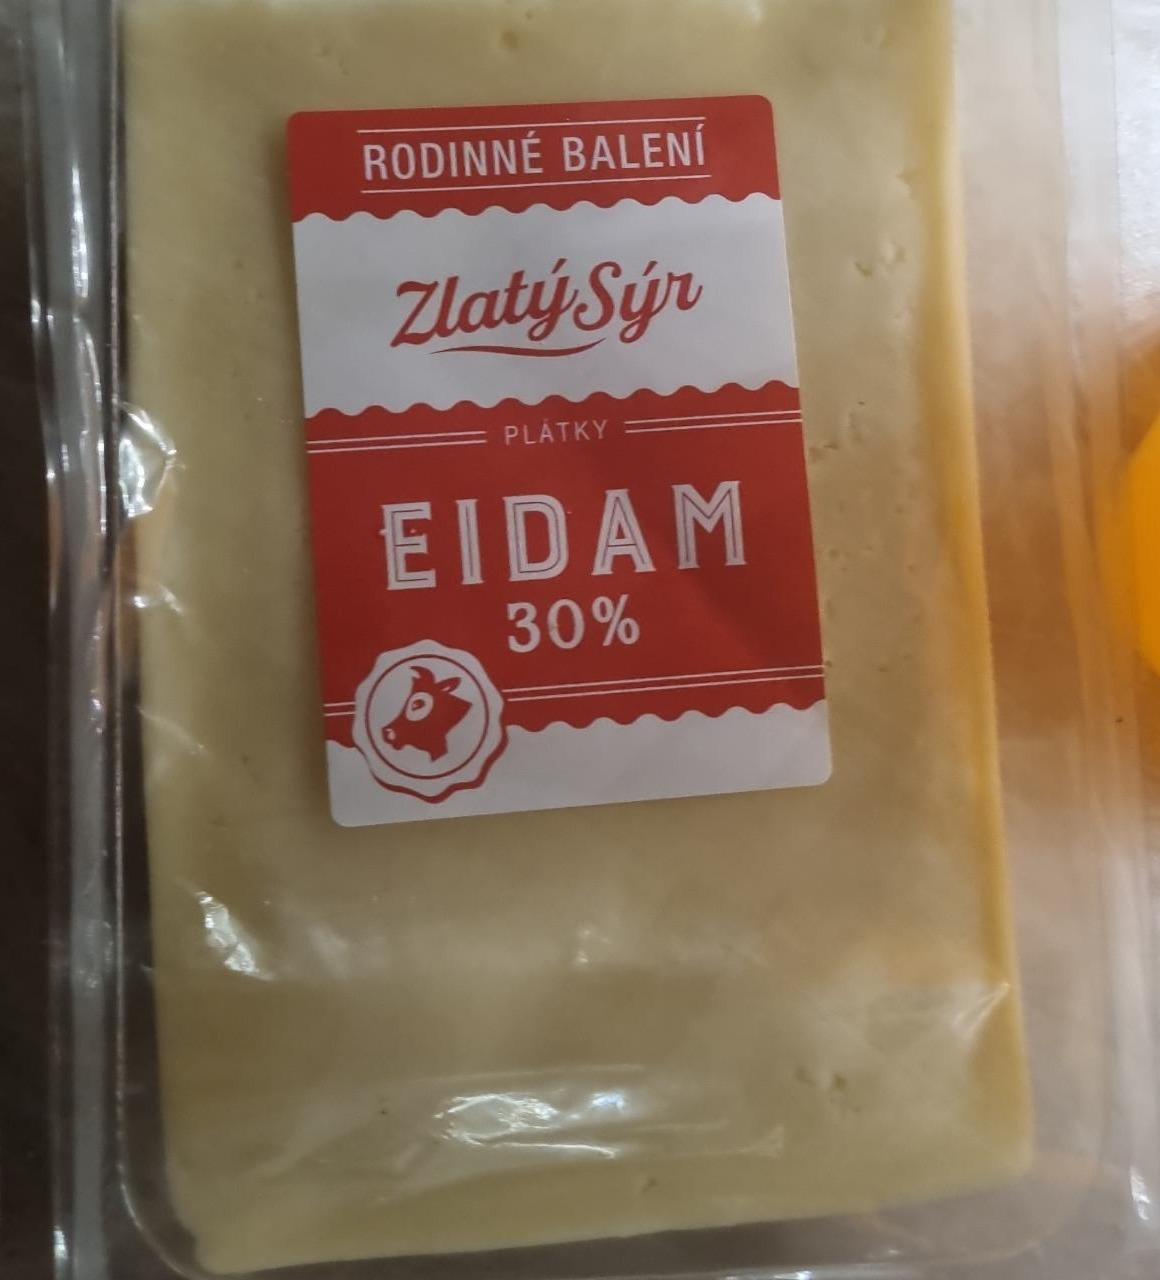 Fotografie - Eidam plátky 30% Zlatý sýr